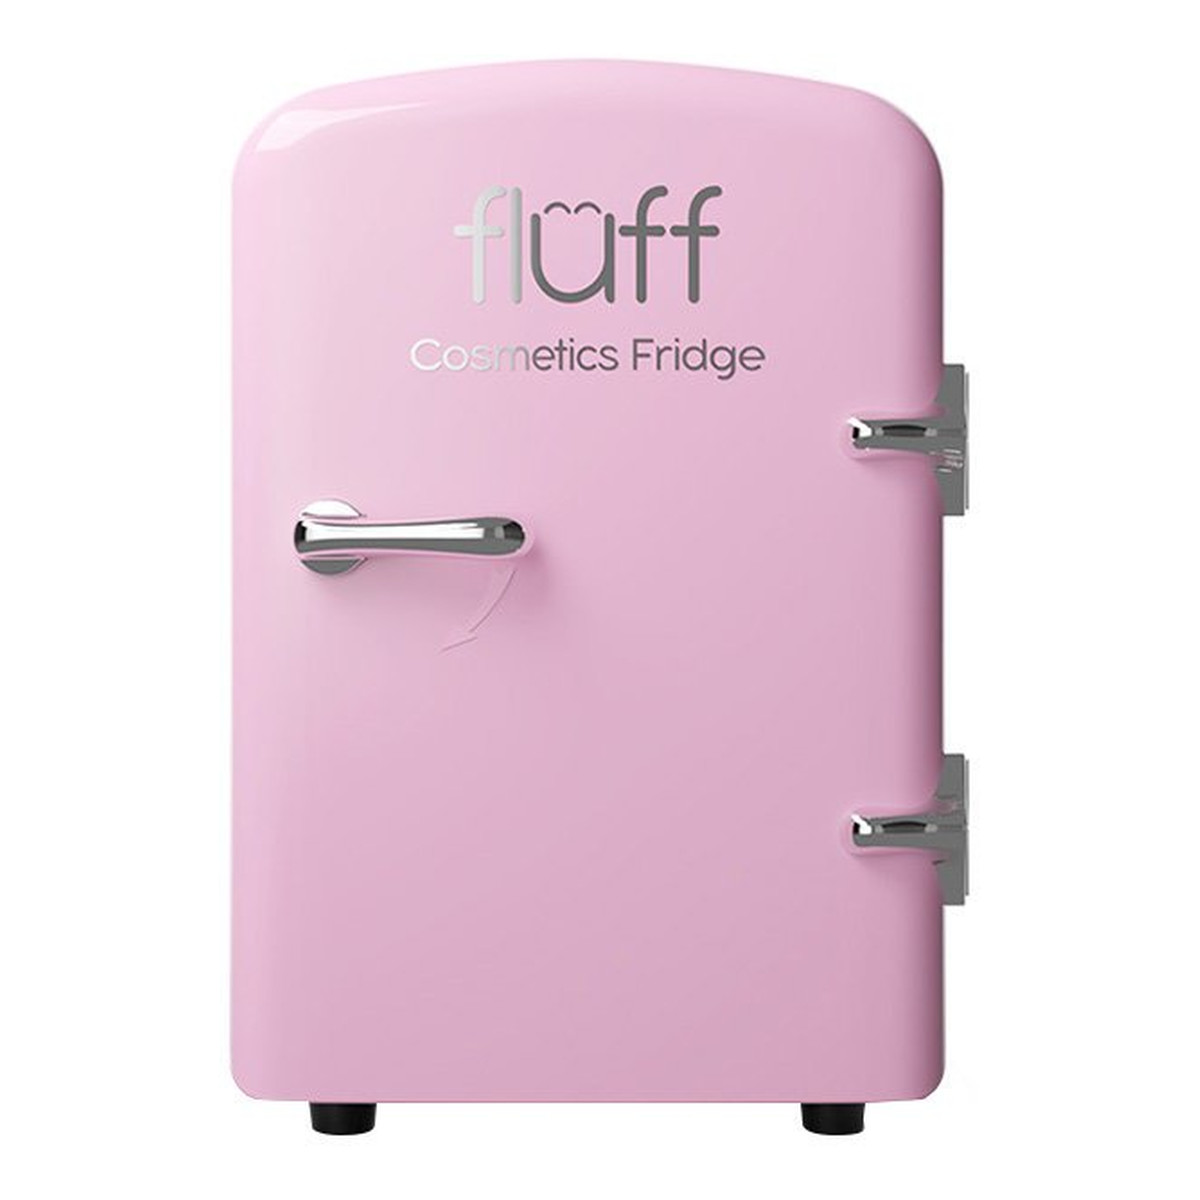 Fluff Cosmetics fridge lodówka kosmetyczna różowa